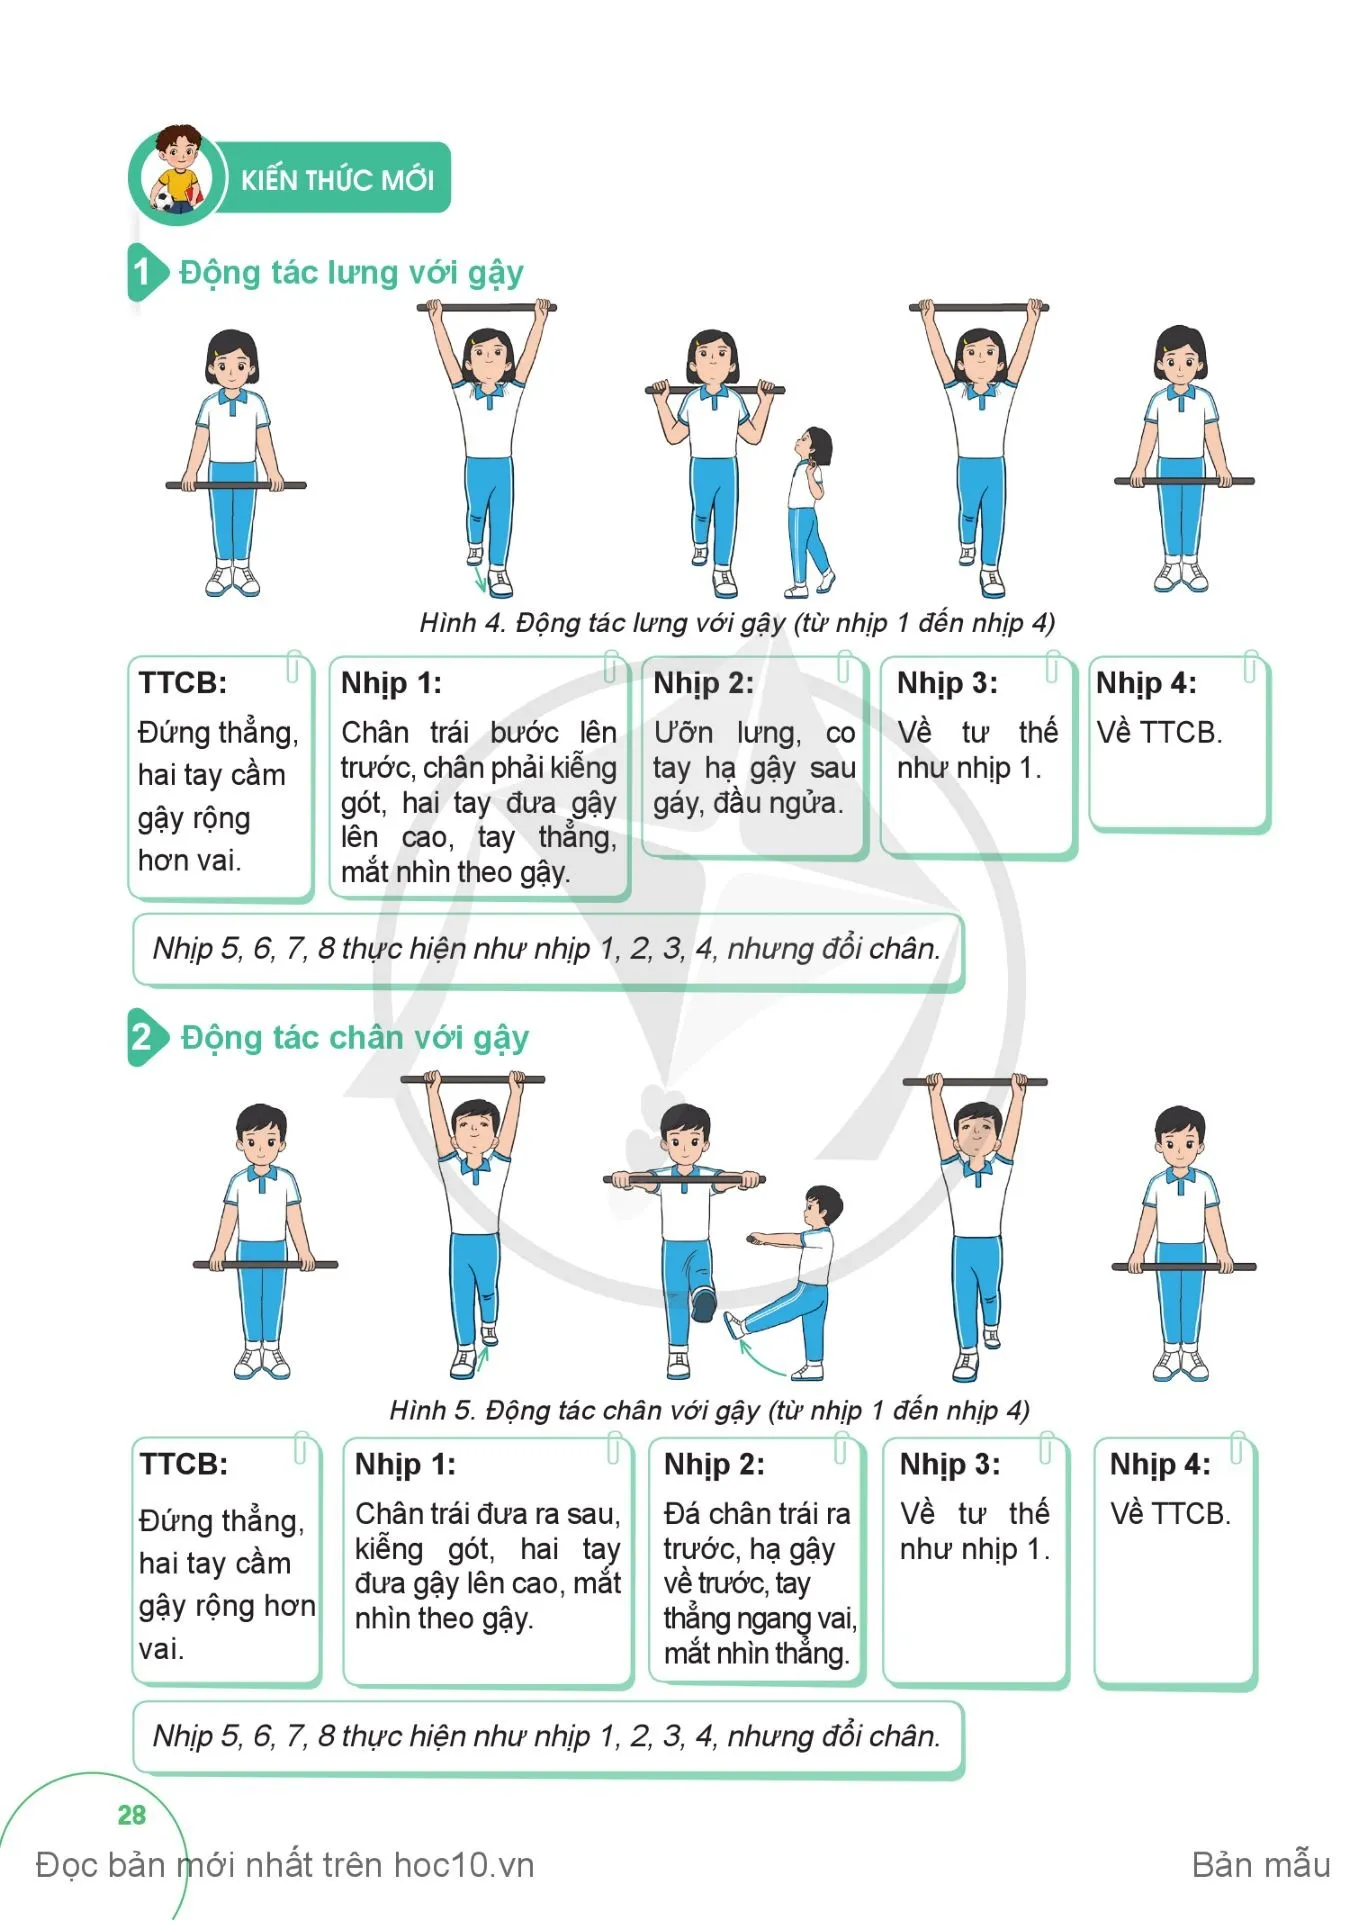 Bài 2. Động tác lưng, động tác chân, động tác nhảy và động tác điều hoà với gậy